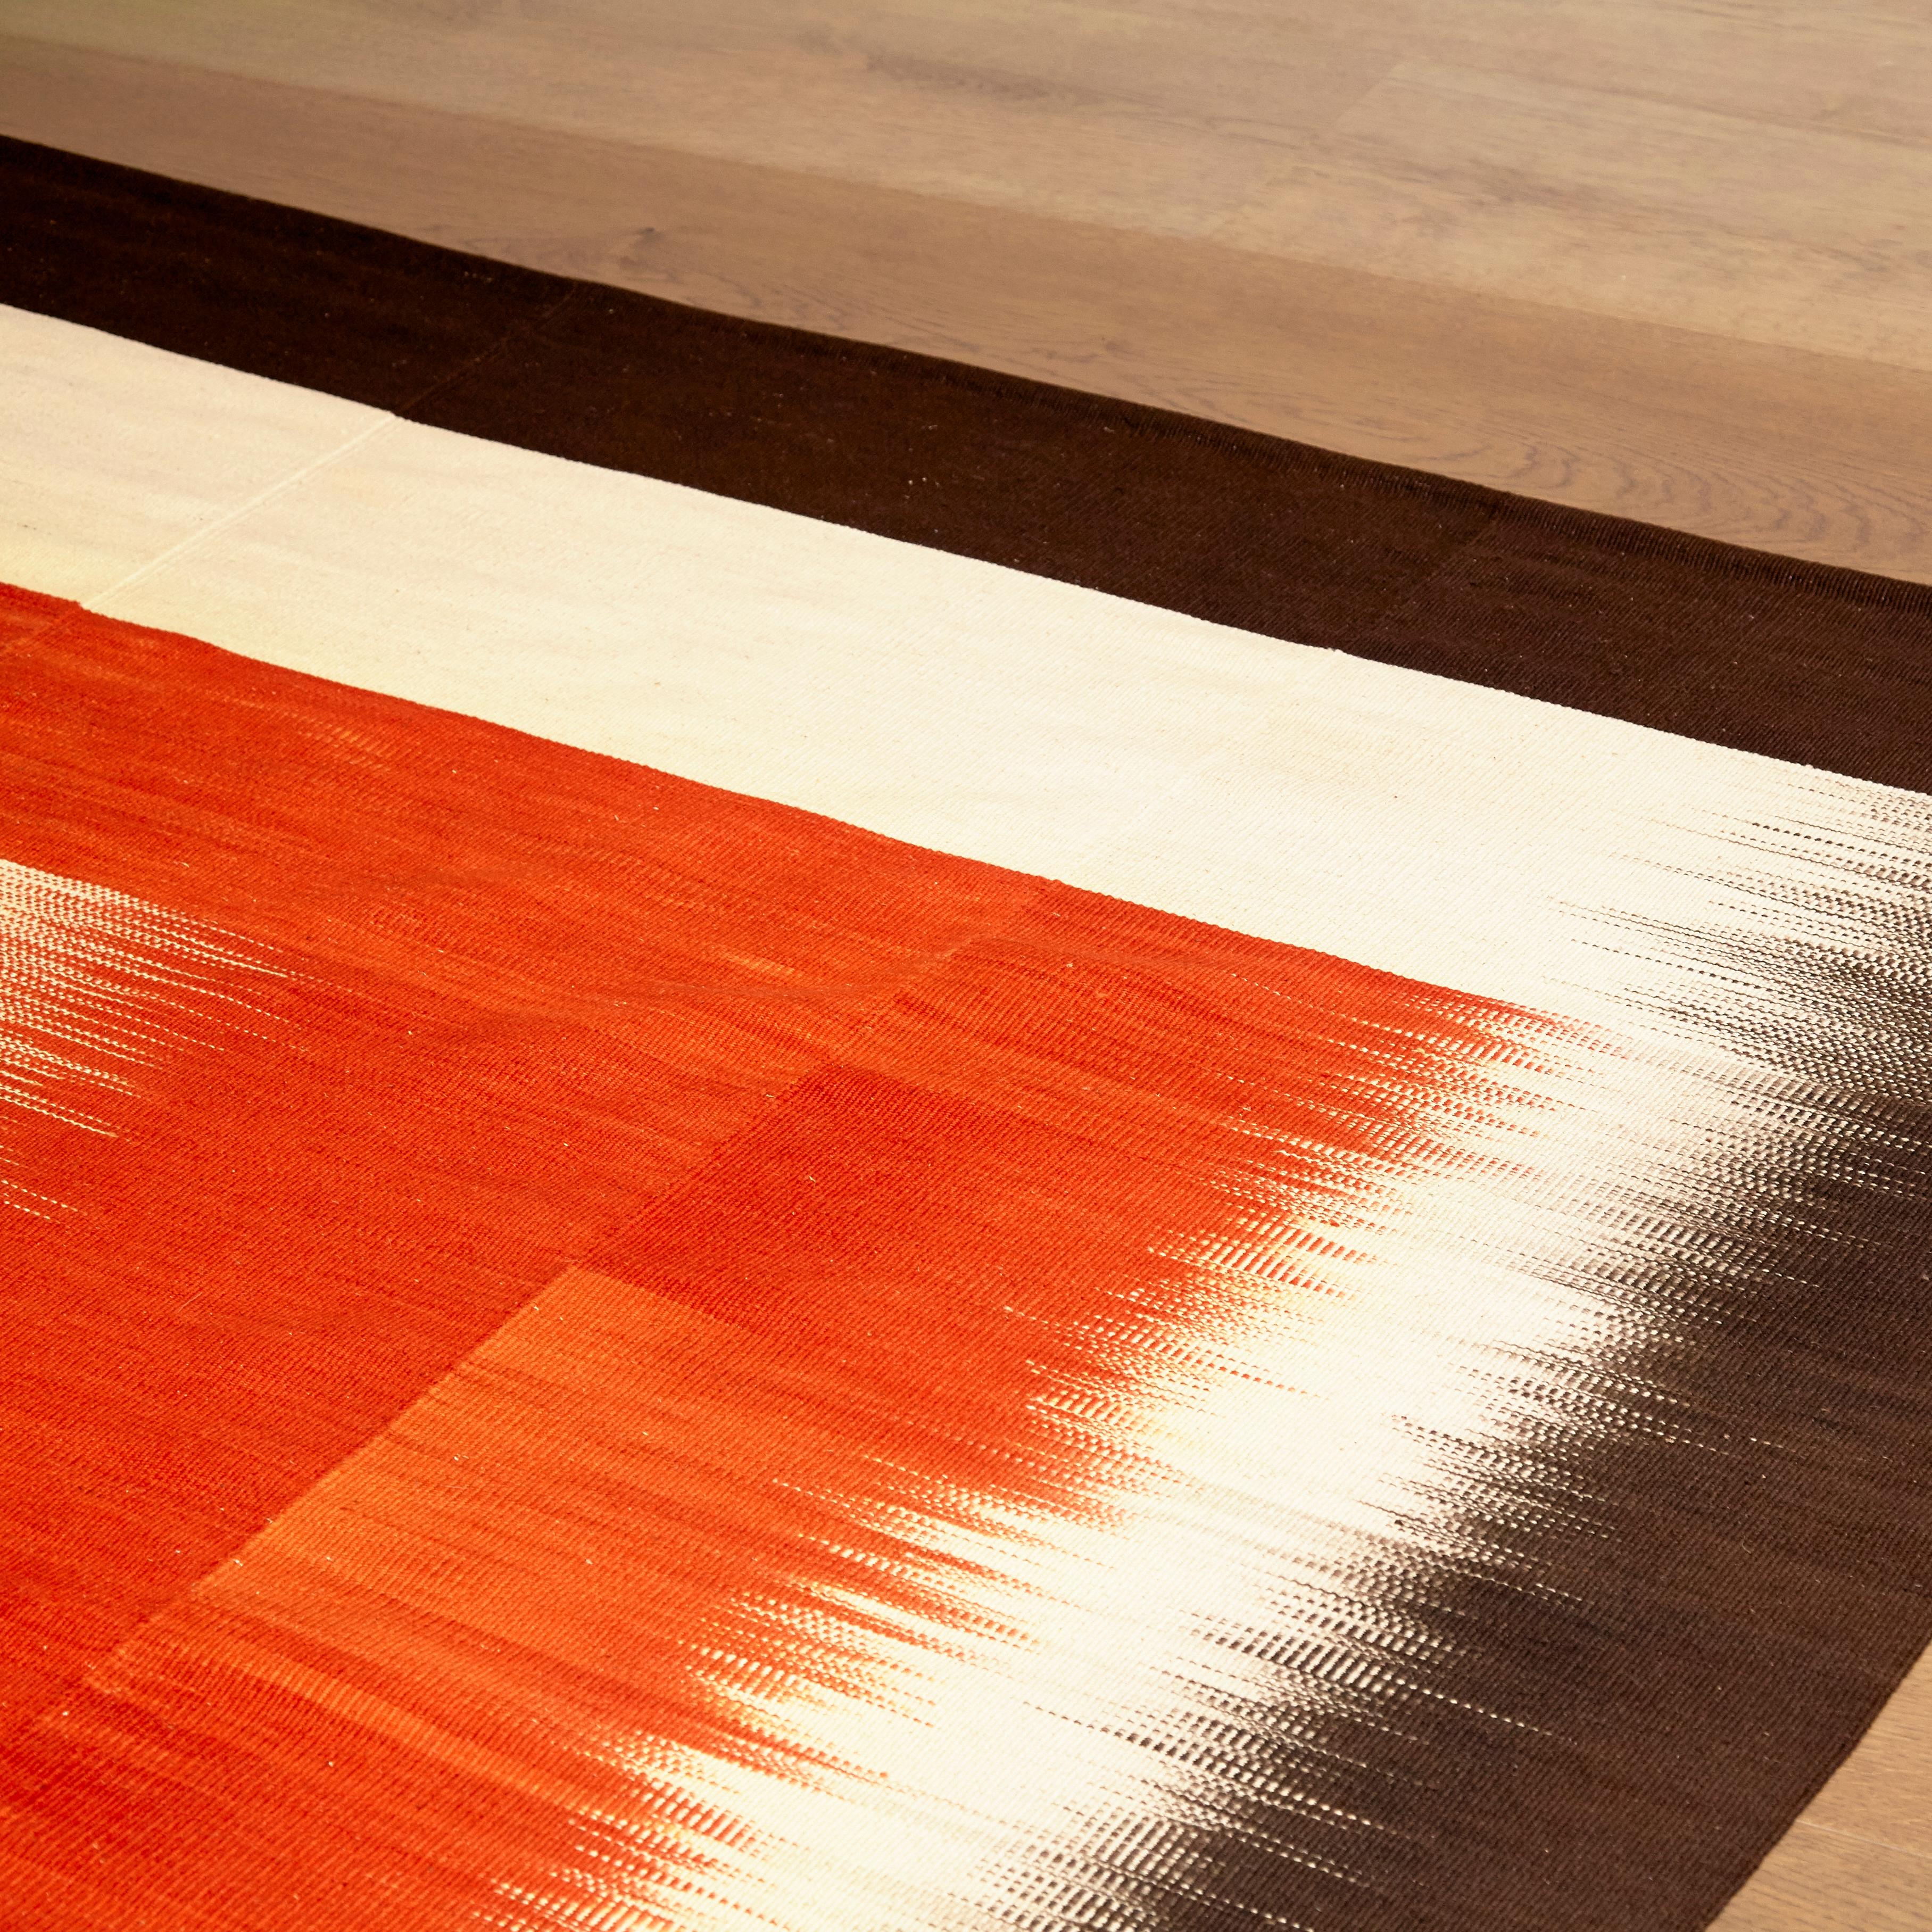 Wool Kilim, 2015
Measures: 265 x 267 cm.